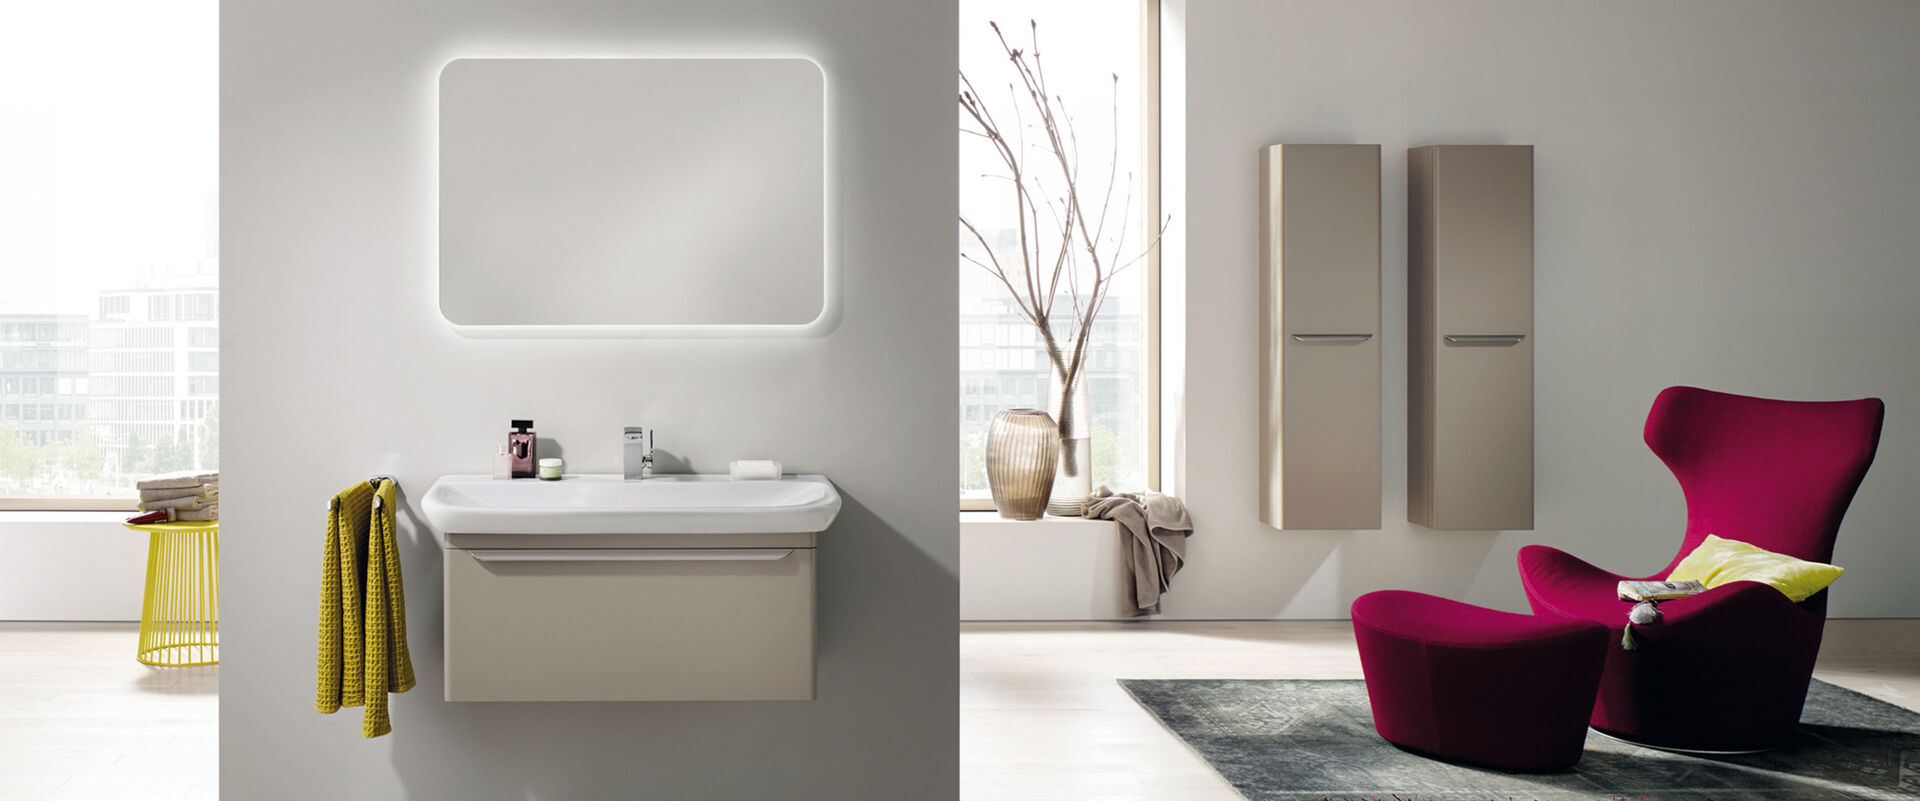 Modernes komplettes Badezimmer mit Sessel, Waschplatz und Badmöbeln.